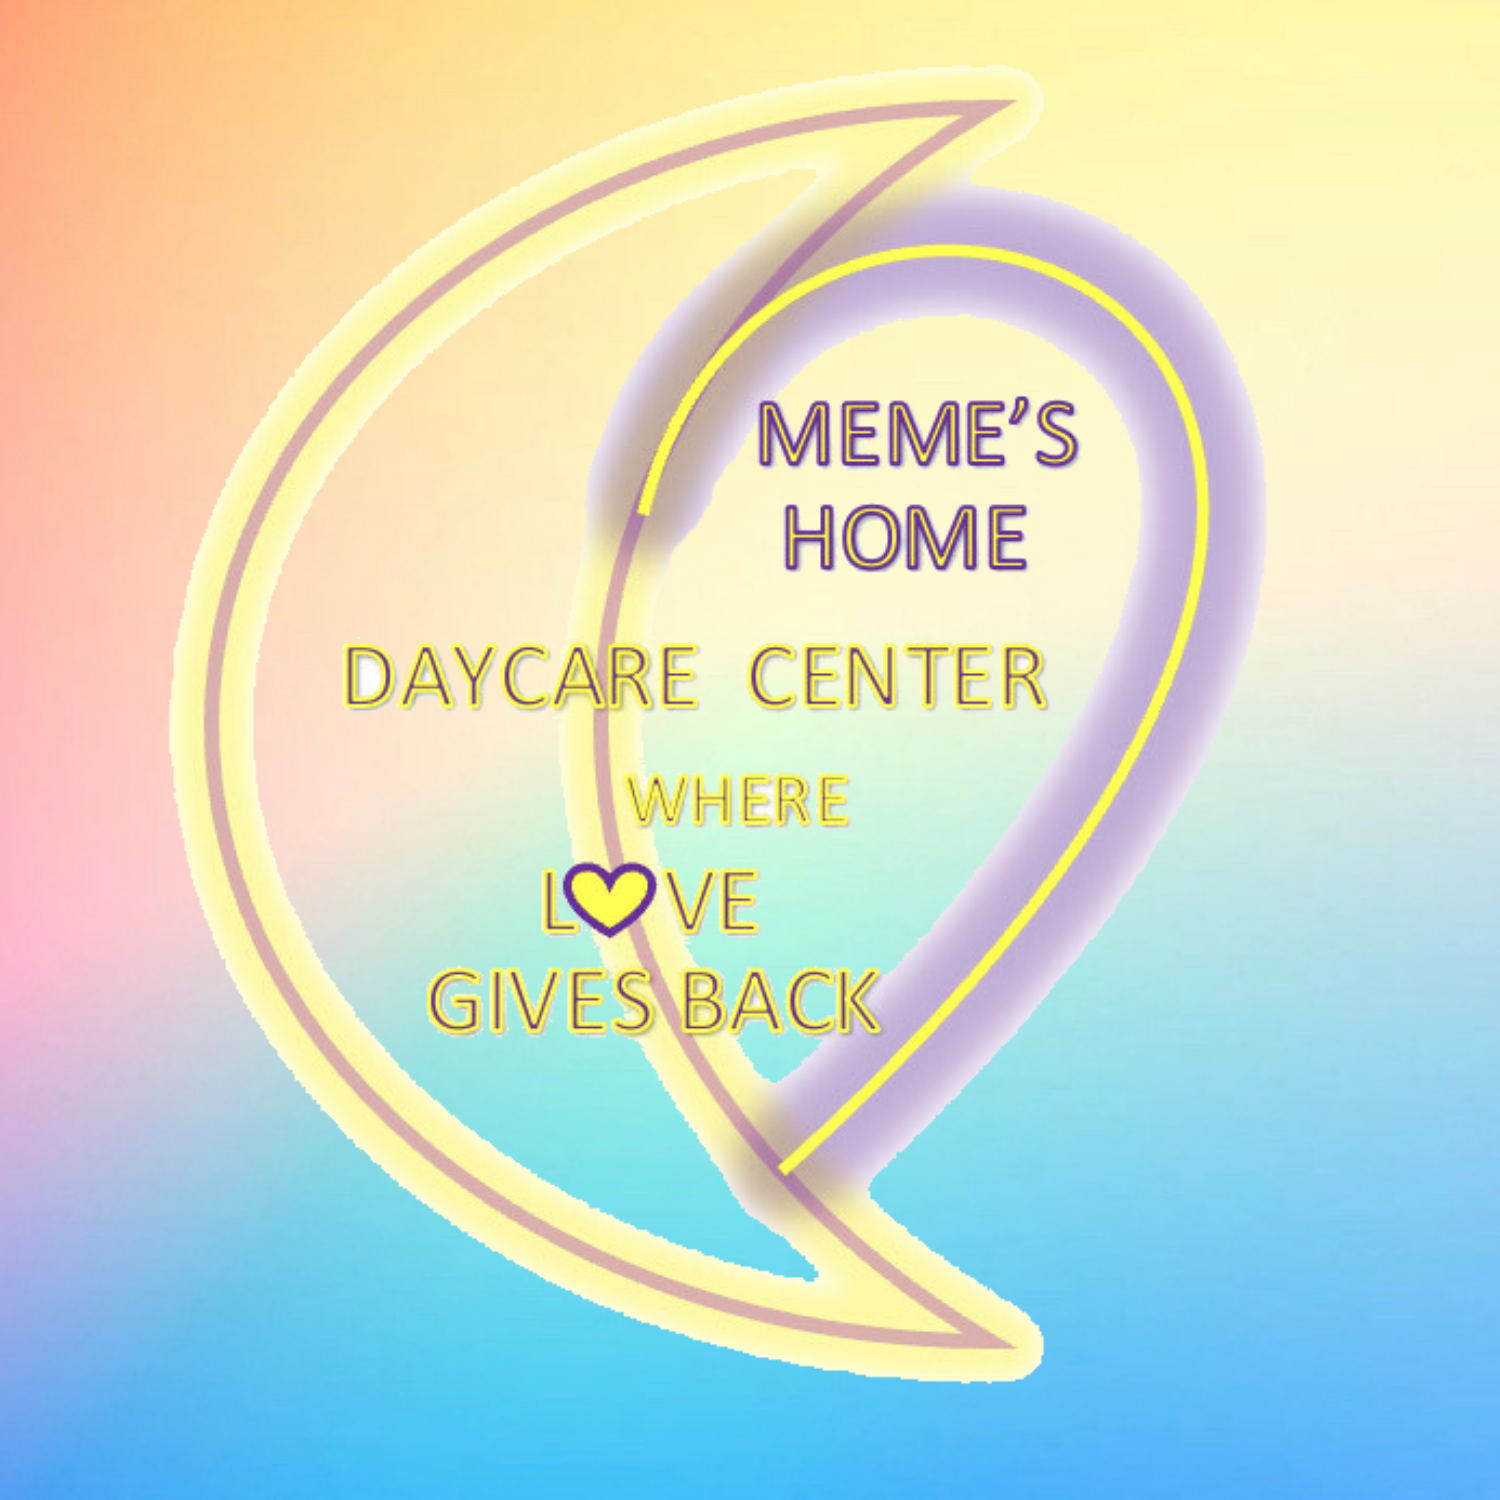 MeMe's Day Care Center